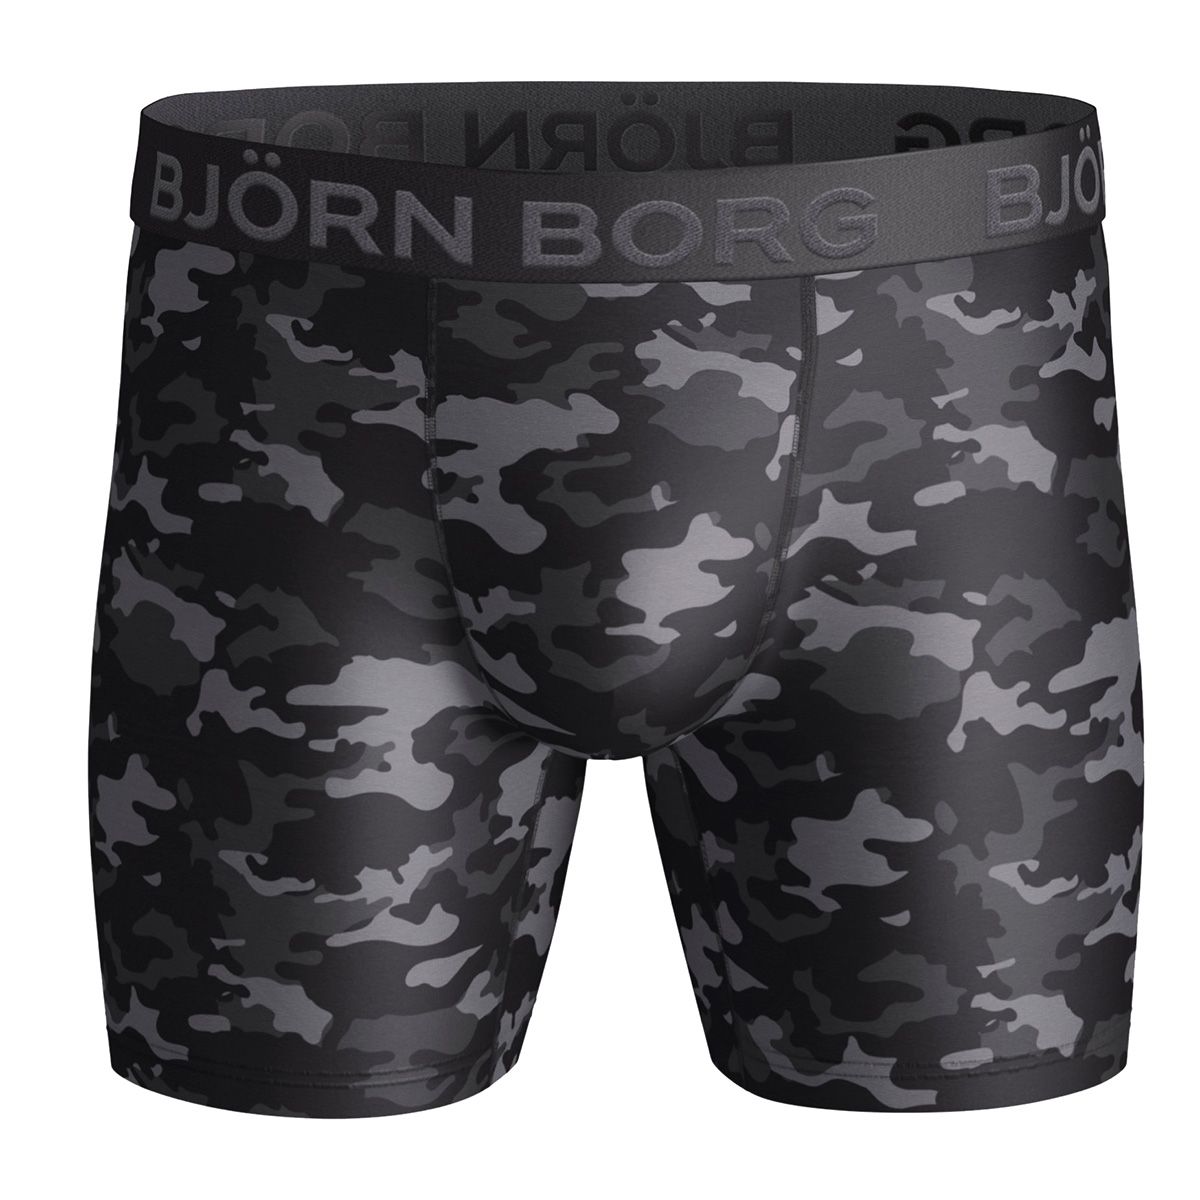 Bjorn Borg Tonal Camo Performance Boxer Shorts 9999-1135-906